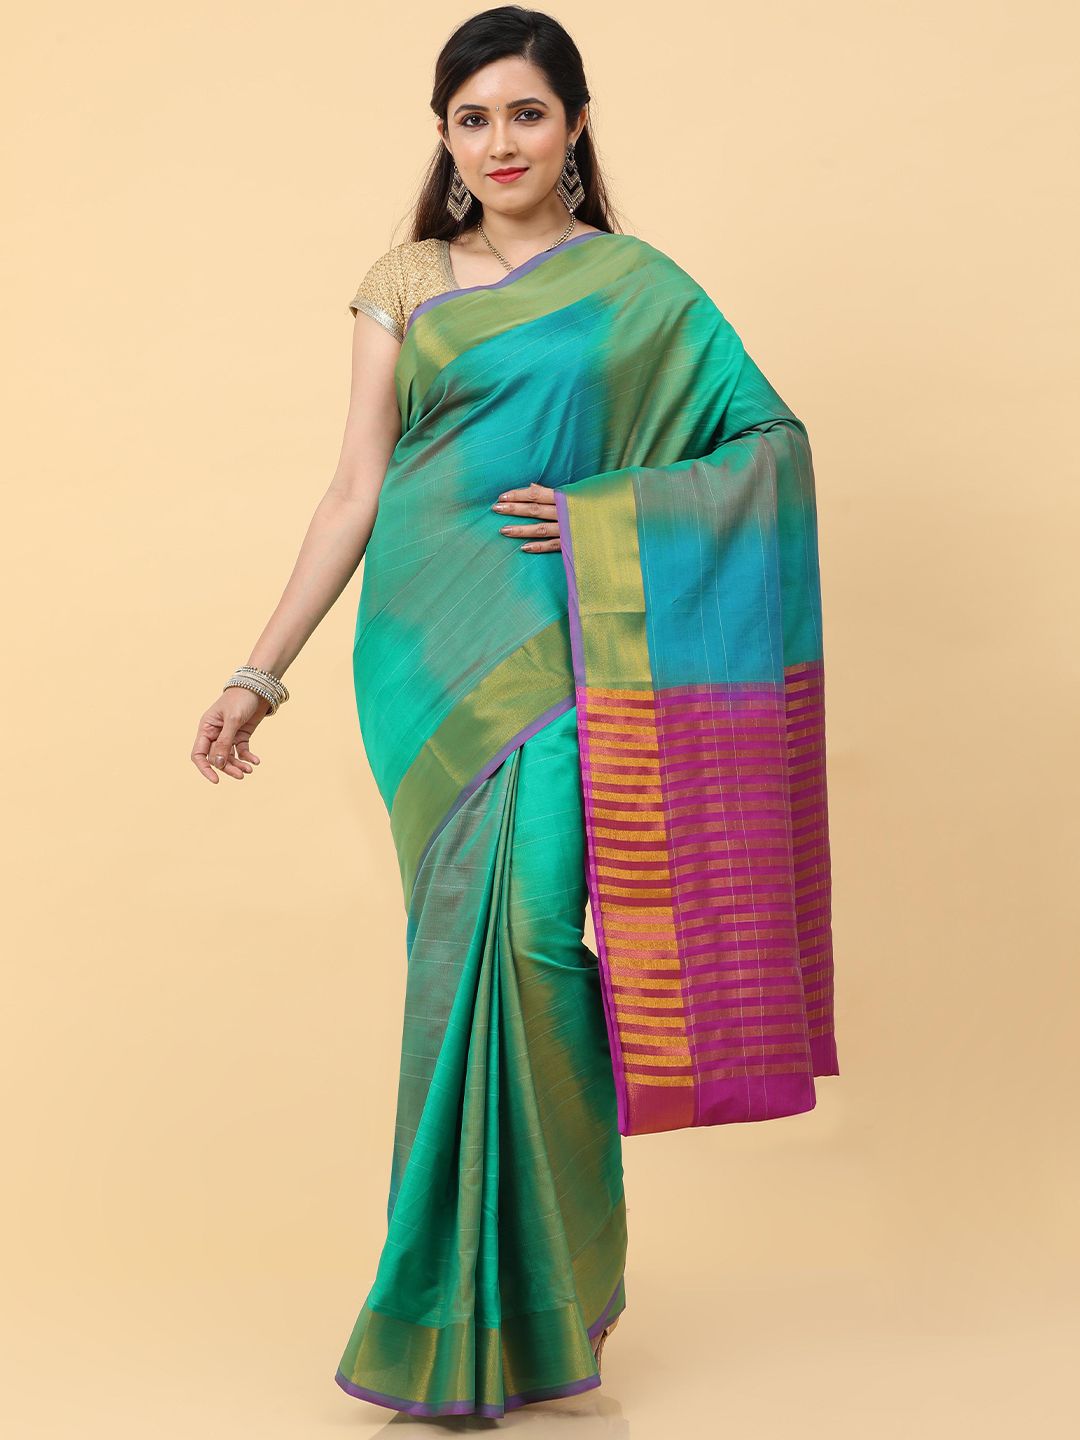 Kalamandir Green, Pink & Blue Striped Pure Silk Ikat Saree Price in India